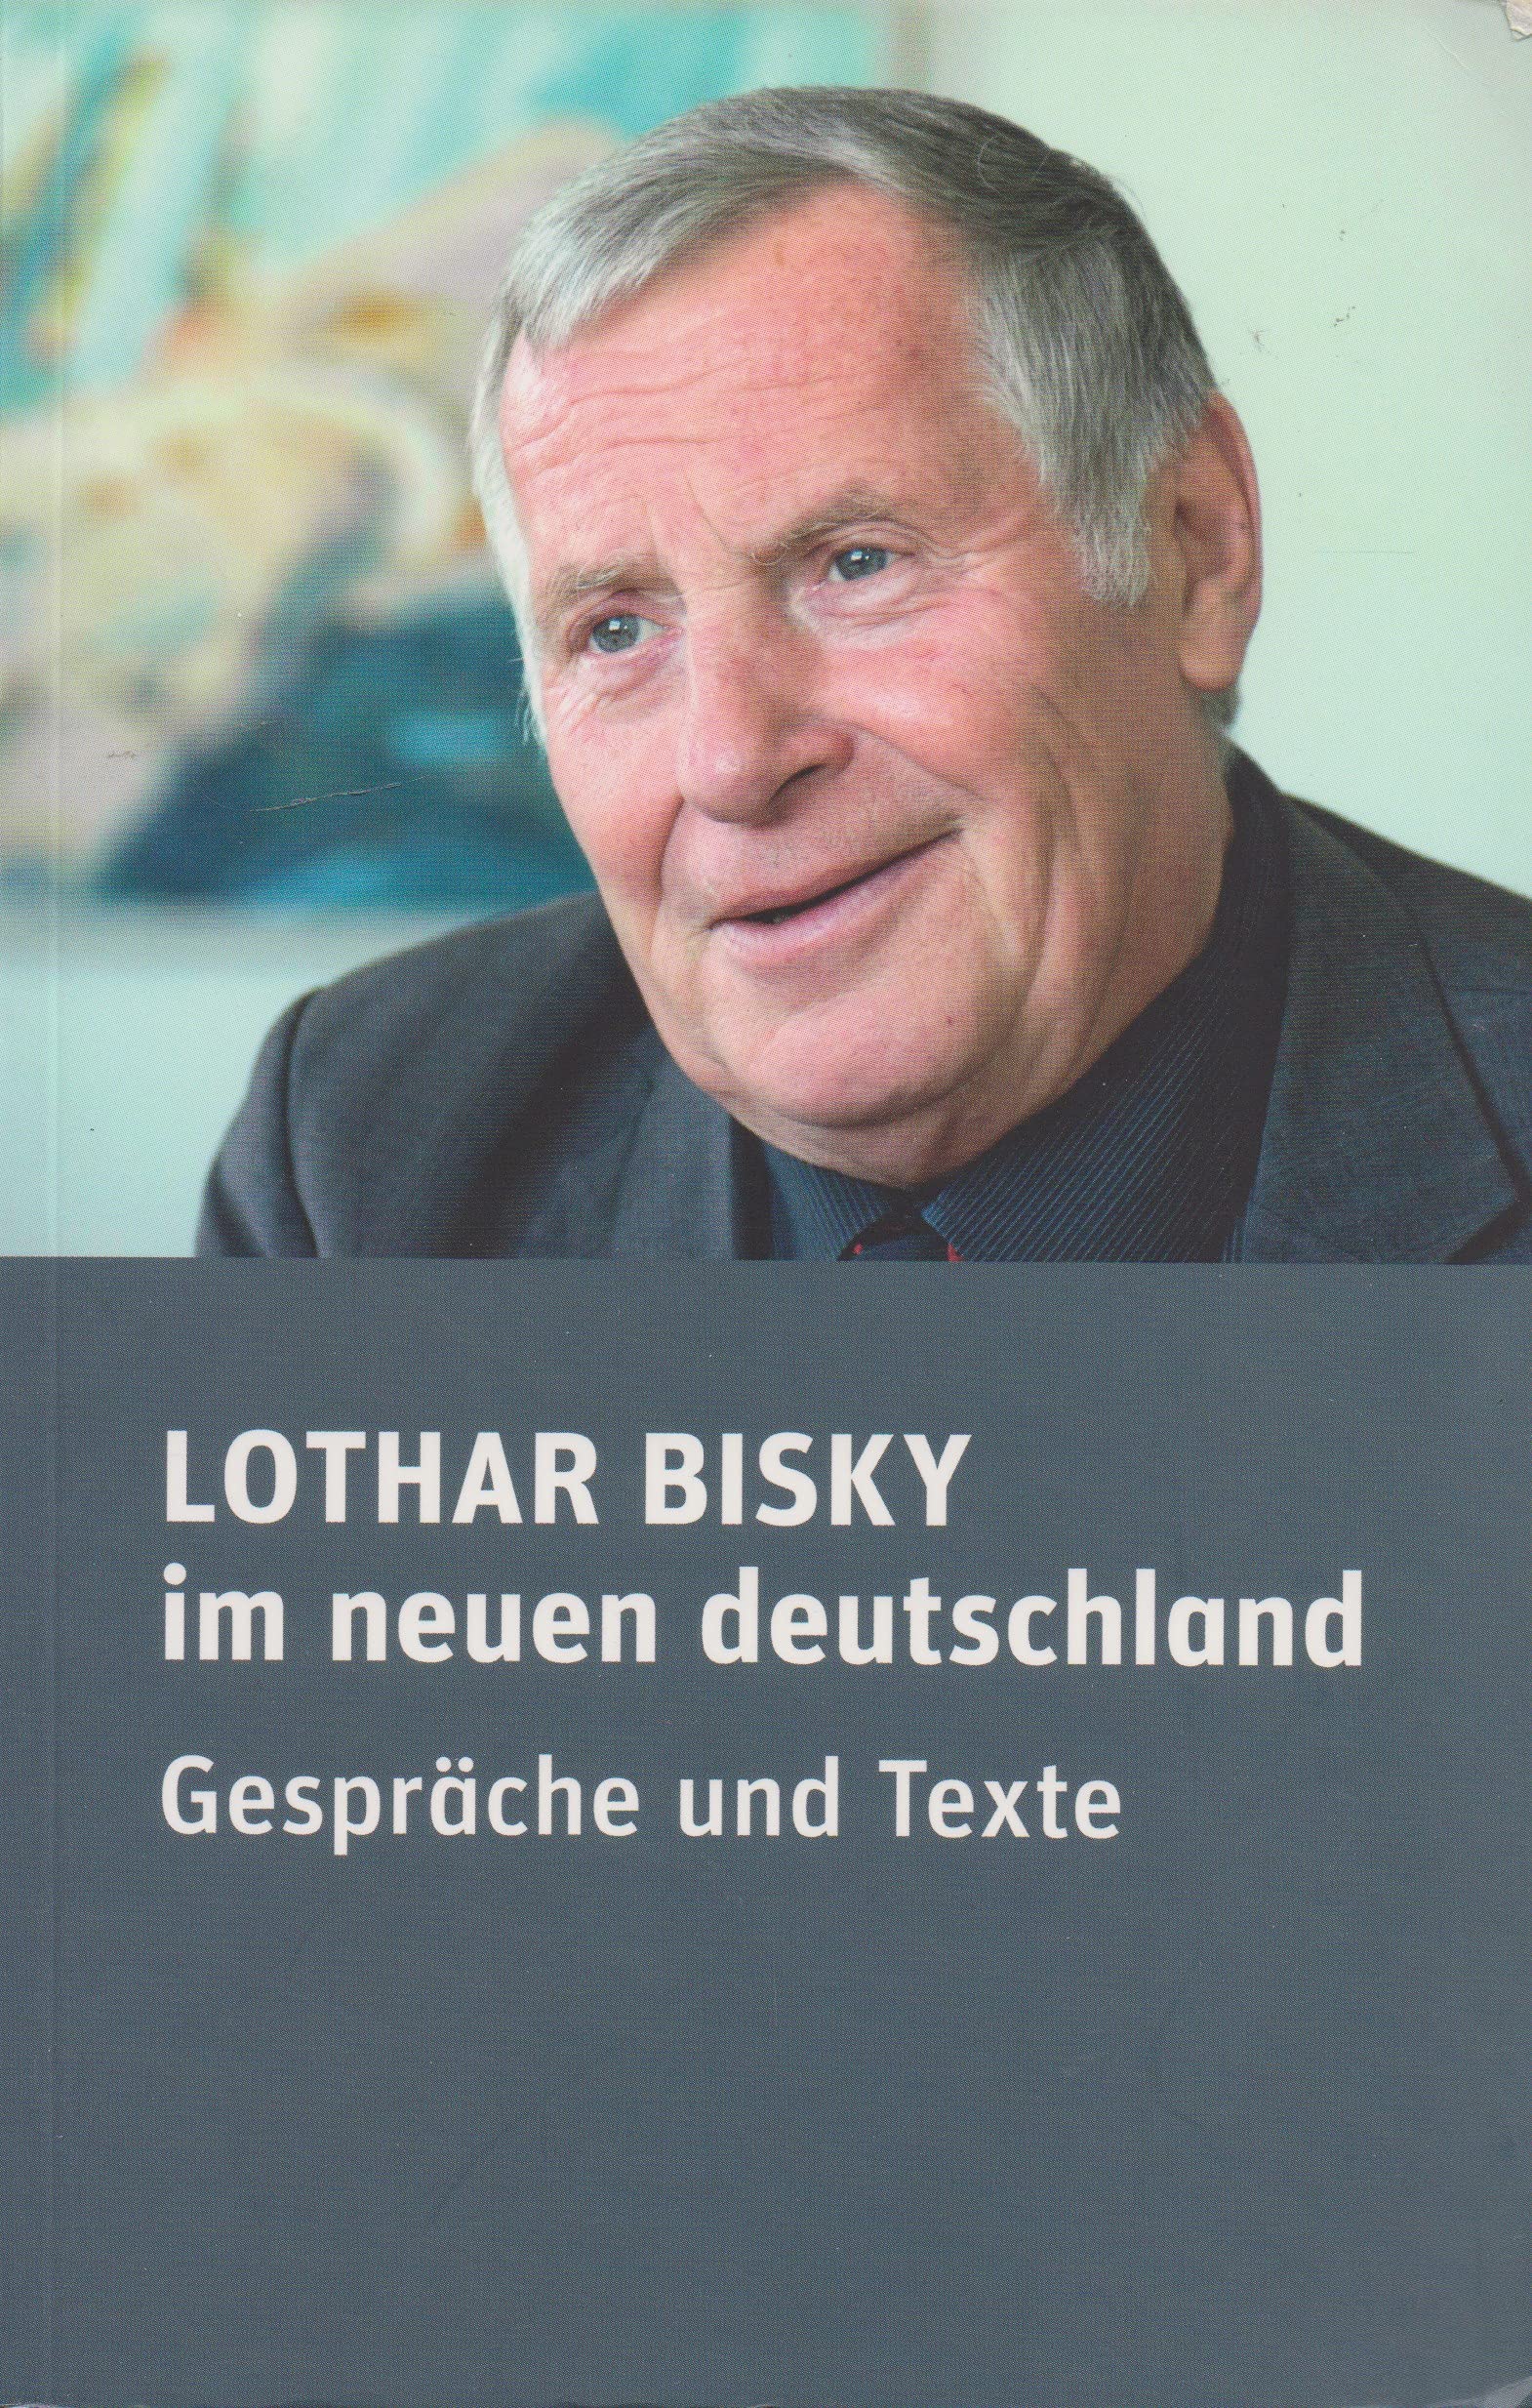 Lothar Bisky im neuen deutschland Gespräche und Texte - Reents, Jürgen (Hrsg.)